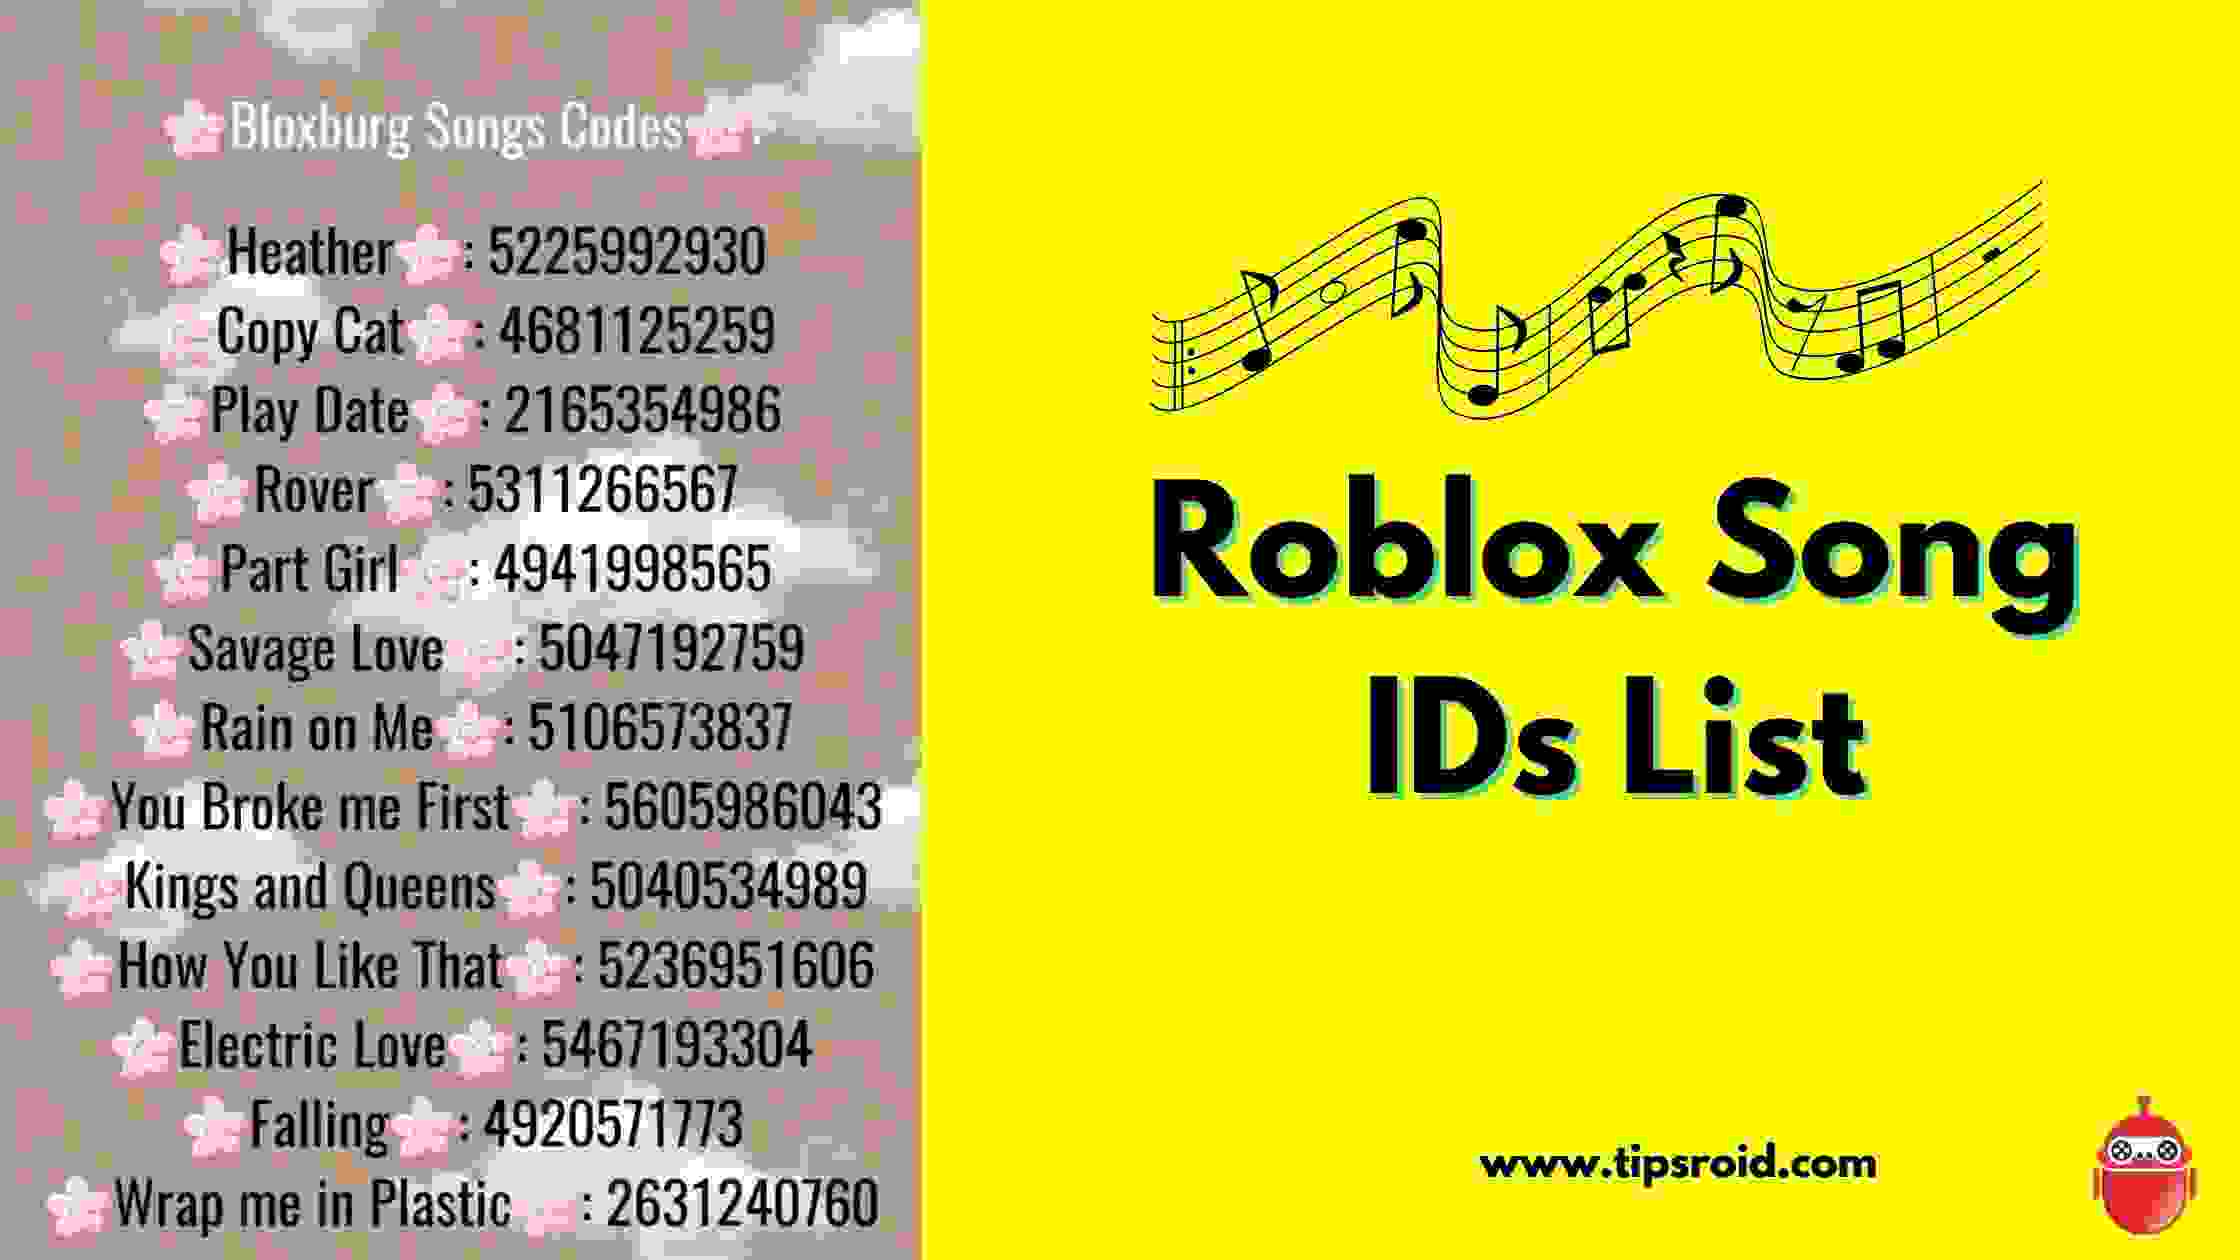 roblox sound codes